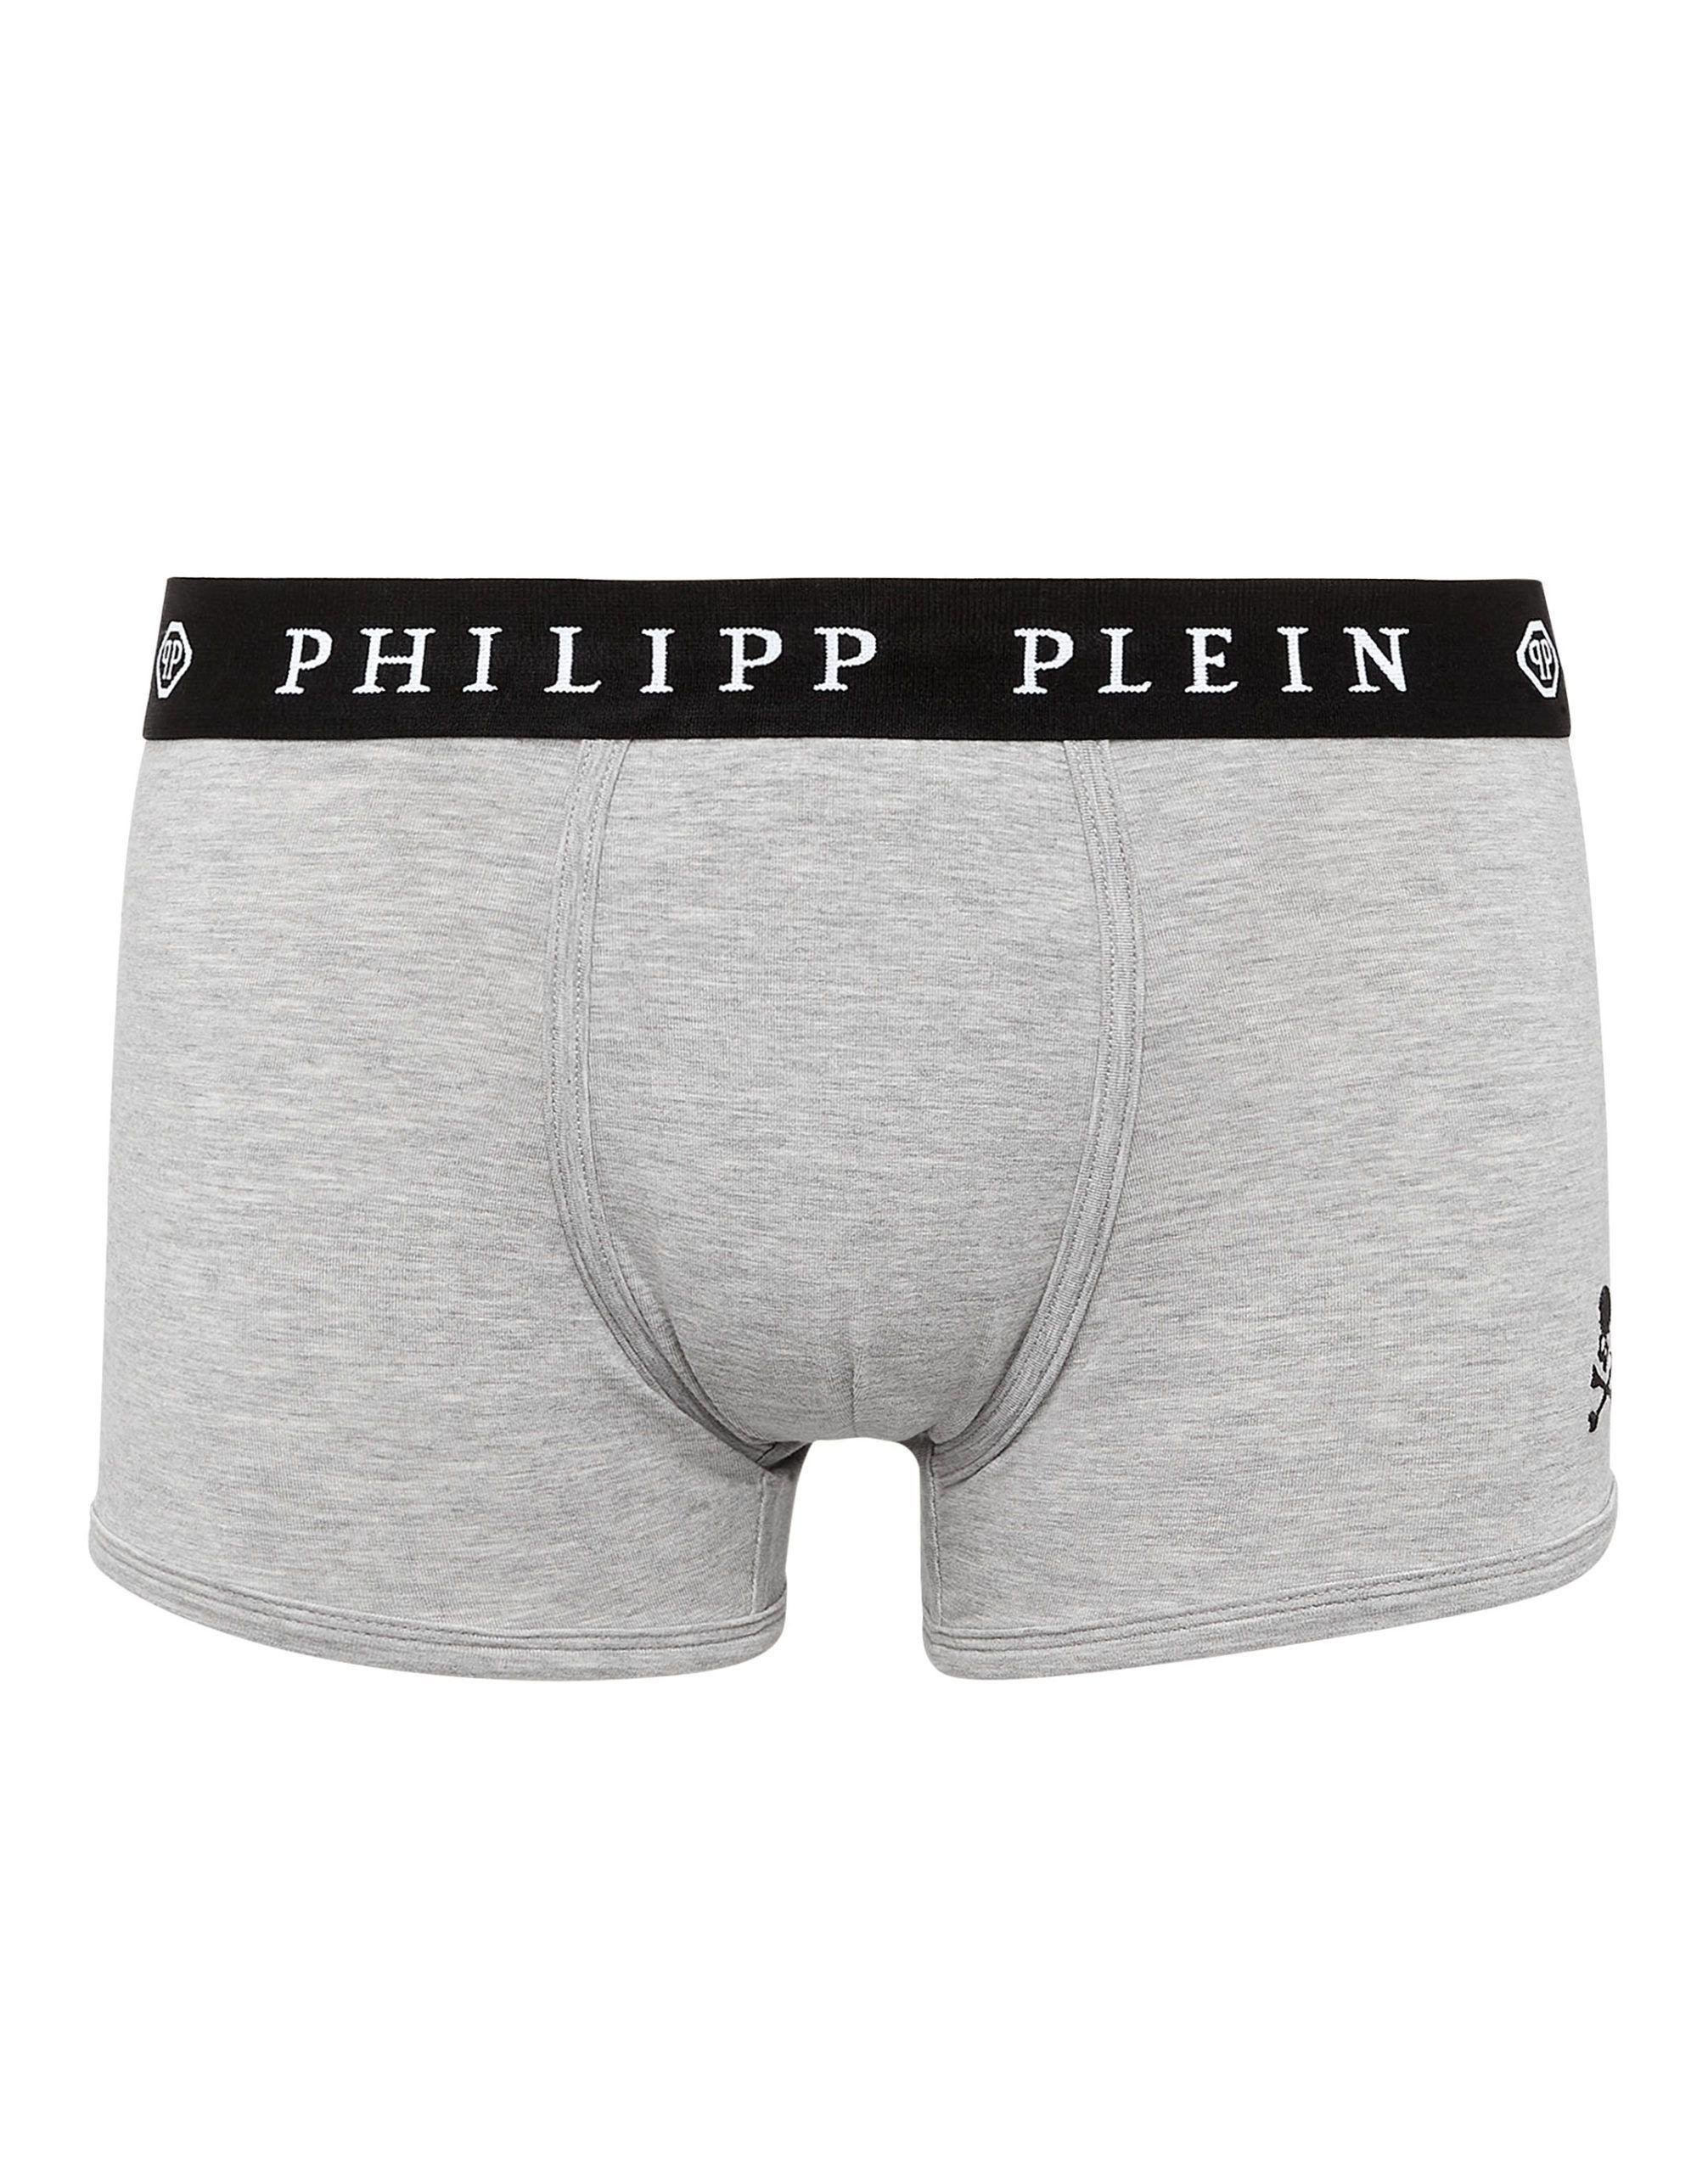 Philipp Plein Philipp Plein Gray Cotton Underwear | Grailed